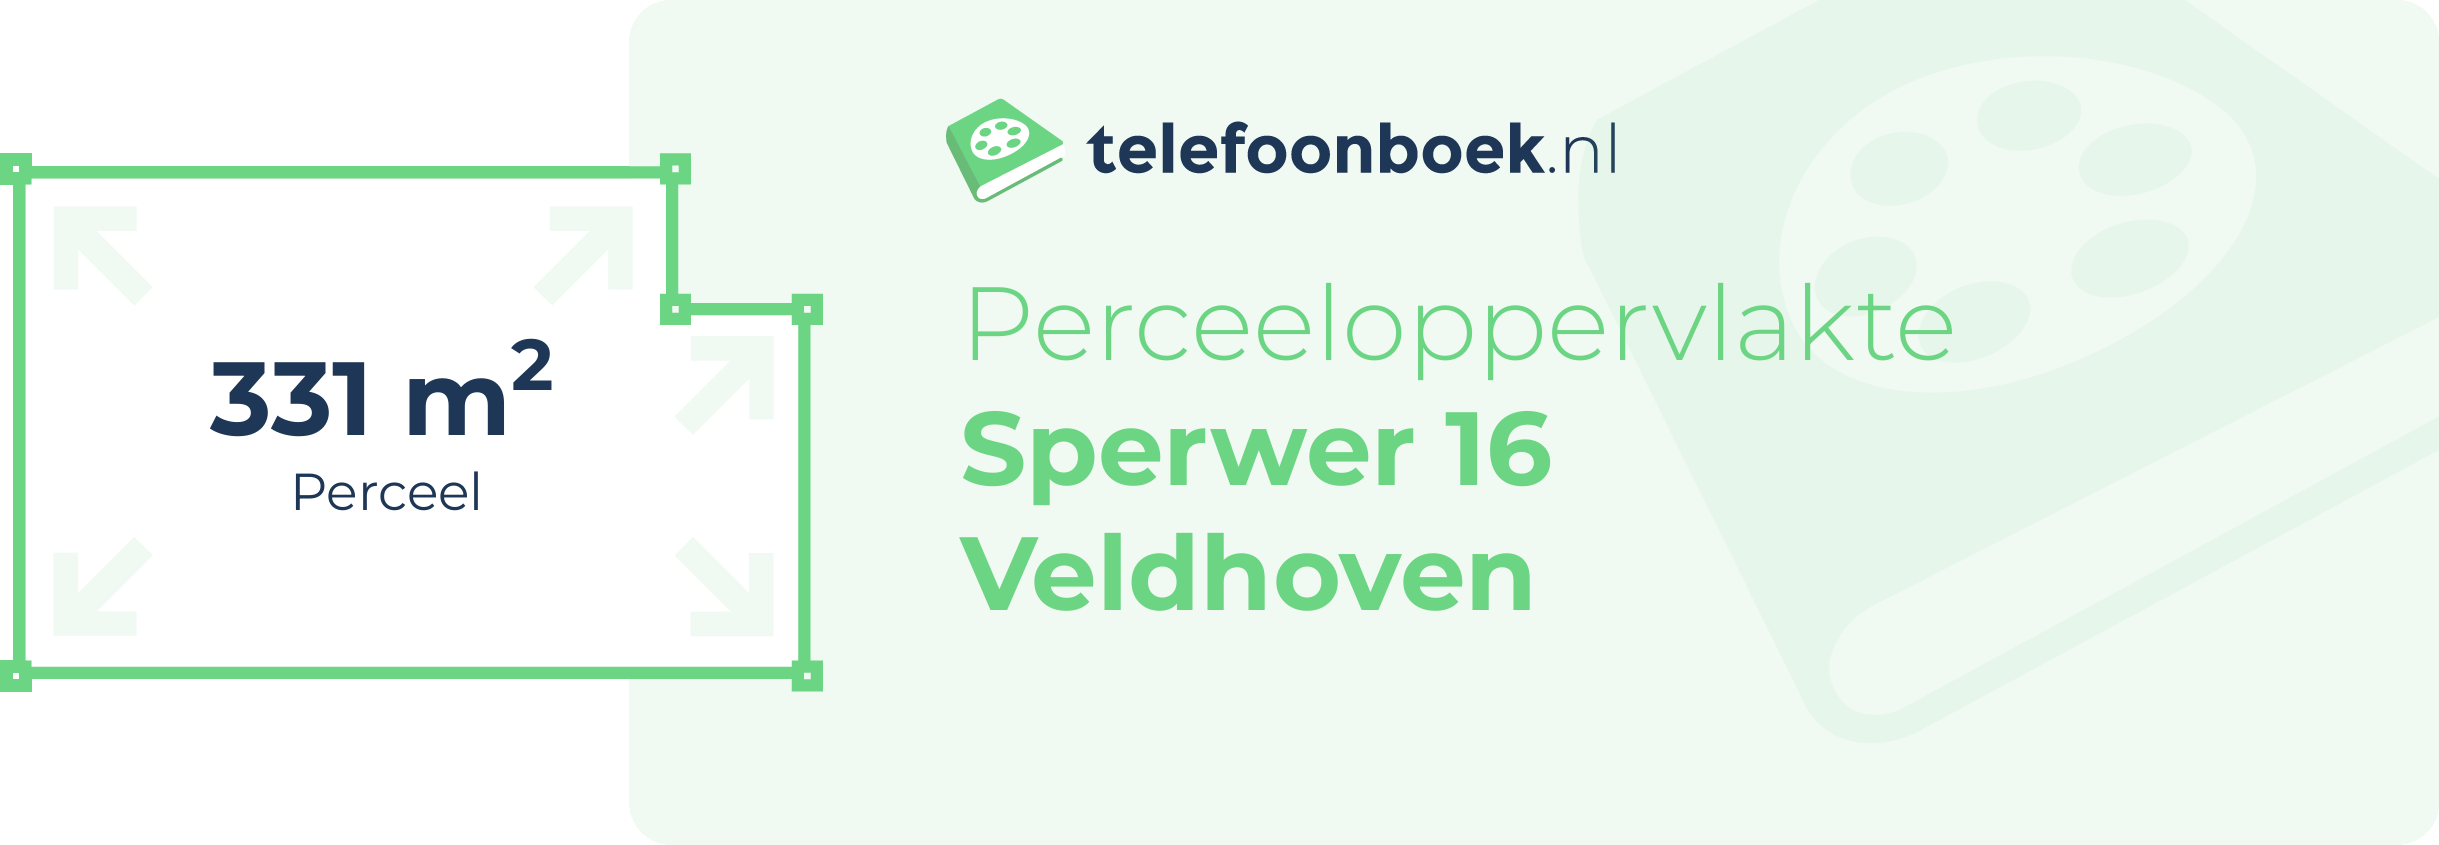 Perceeloppervlakte Sperwer 16 Veldhoven